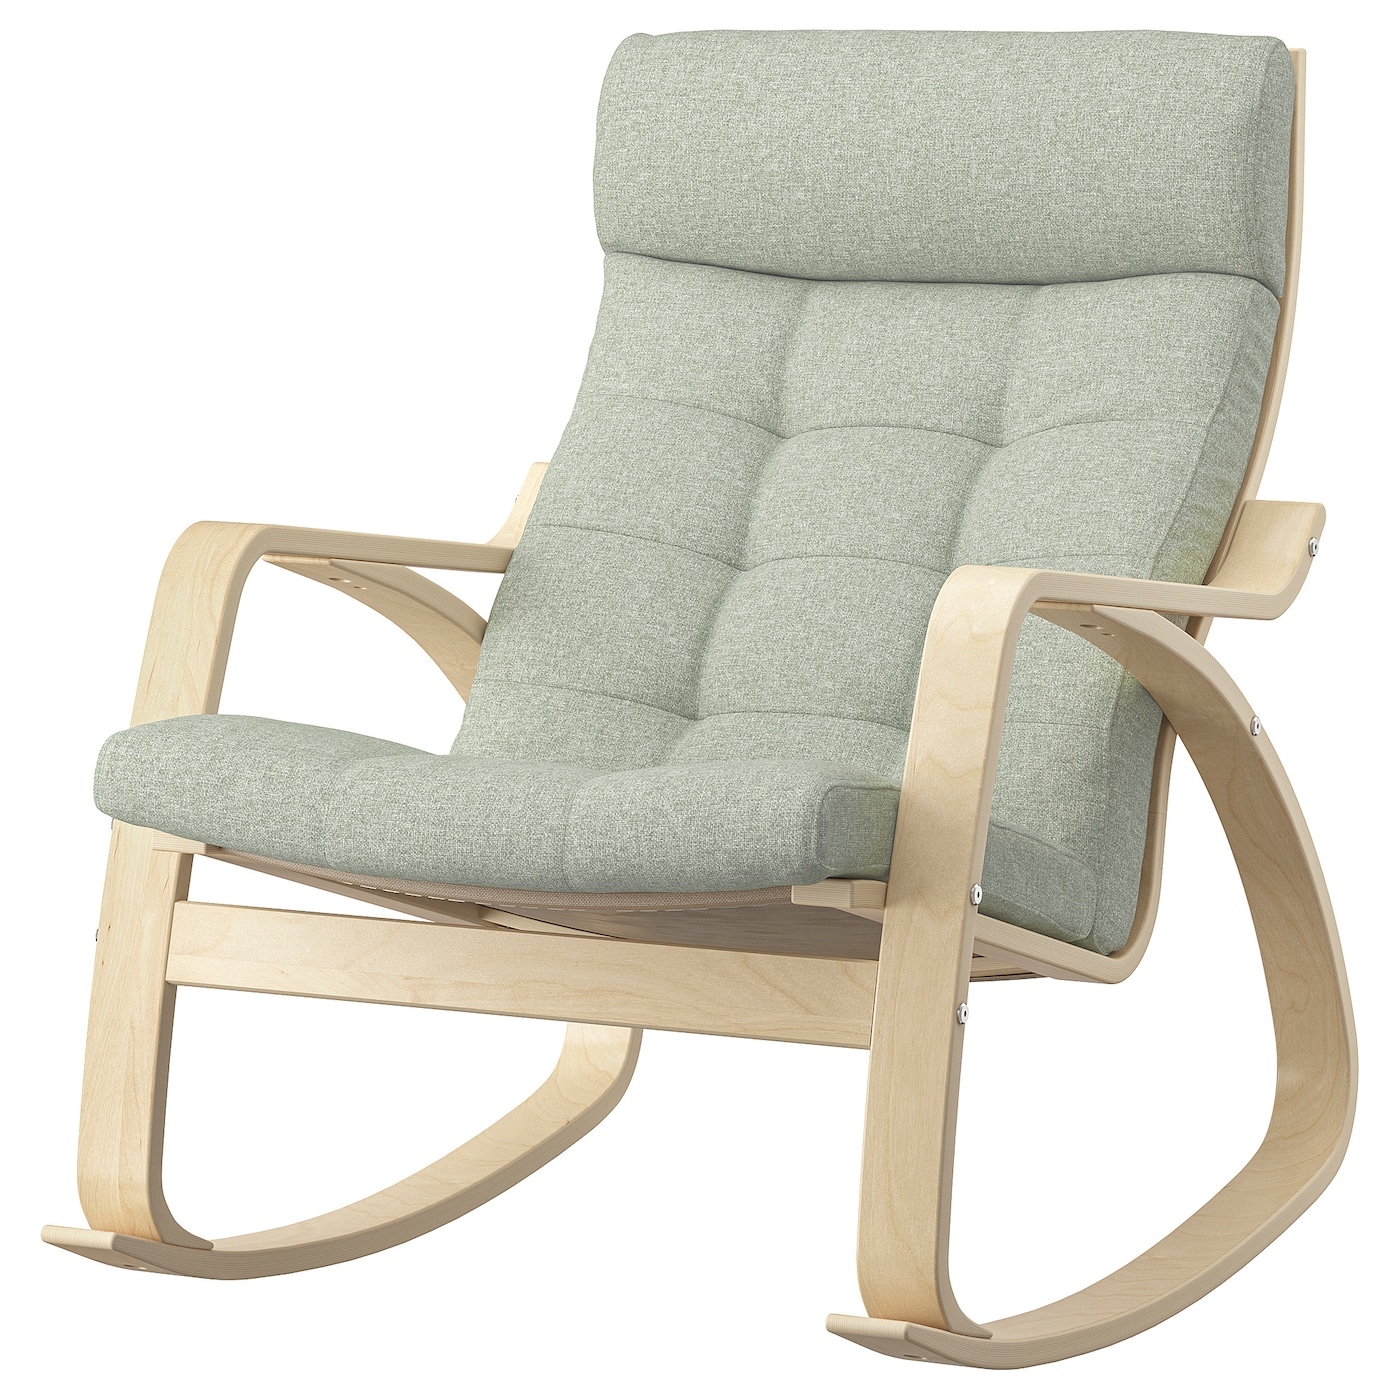 ПОЭНГ Кресло-качалка, березовый шпон/Гуннаред светло-зеленый POÄNG IKEA кресло качалка берген